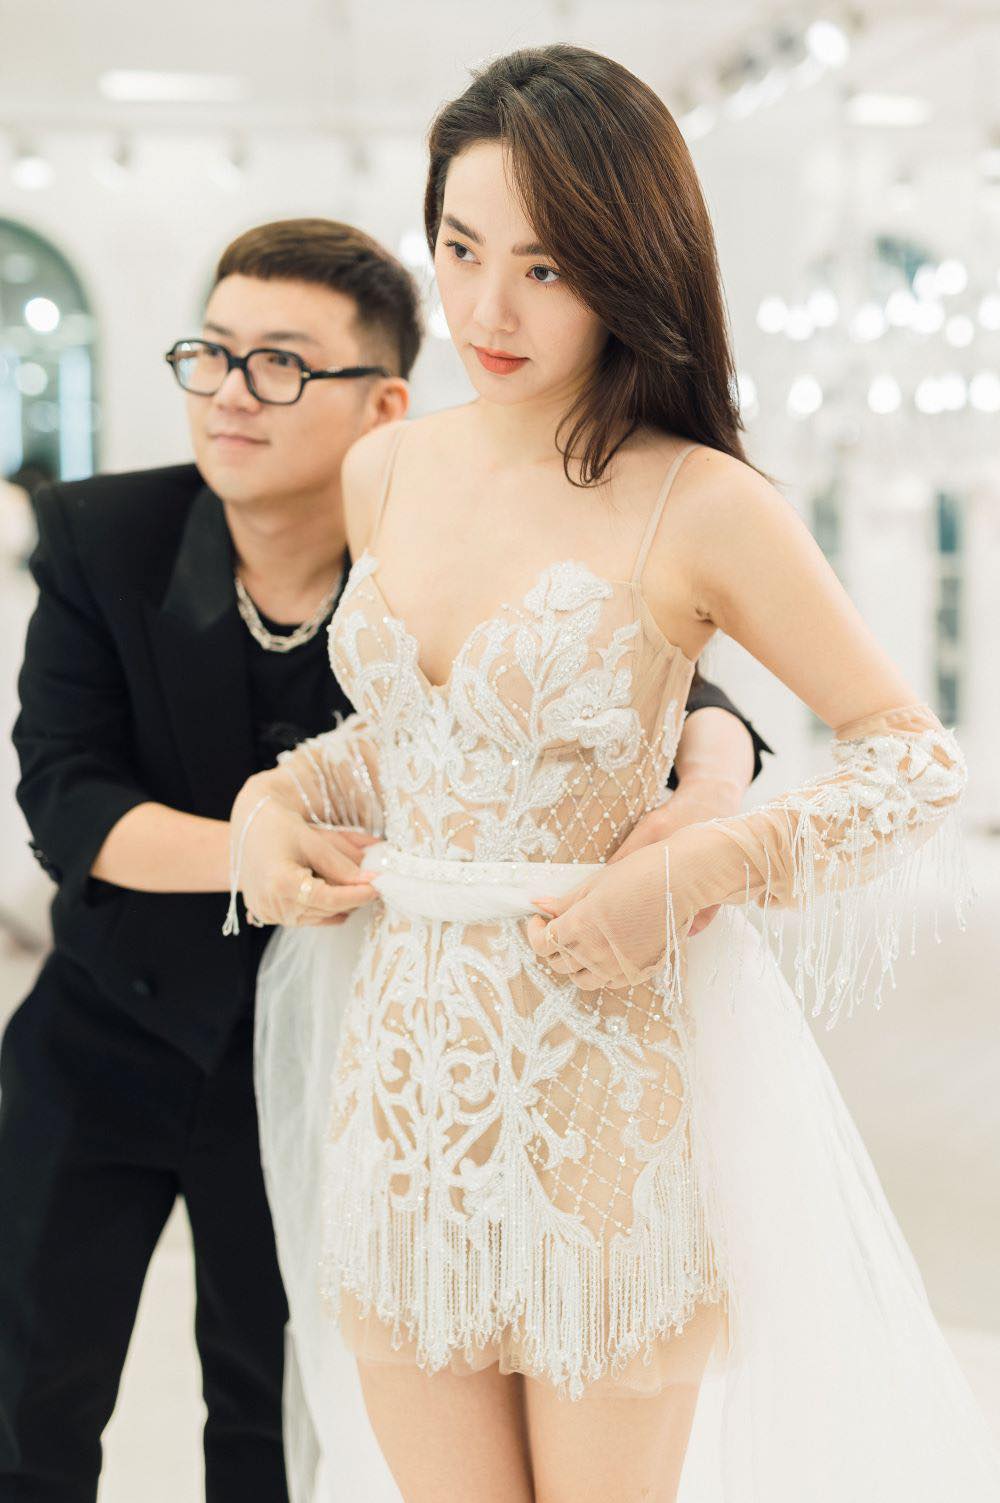 NTK Chung Thanh Phong sửa soạn váy áo cho ca sĩ Minh Hằng. Nữ ca sĩ mặc chiếc váy ngắn, ôm body tôn dáng xinh tươi. Nam nhà thiết kế tận tình chỉnh trang phục cho cô.